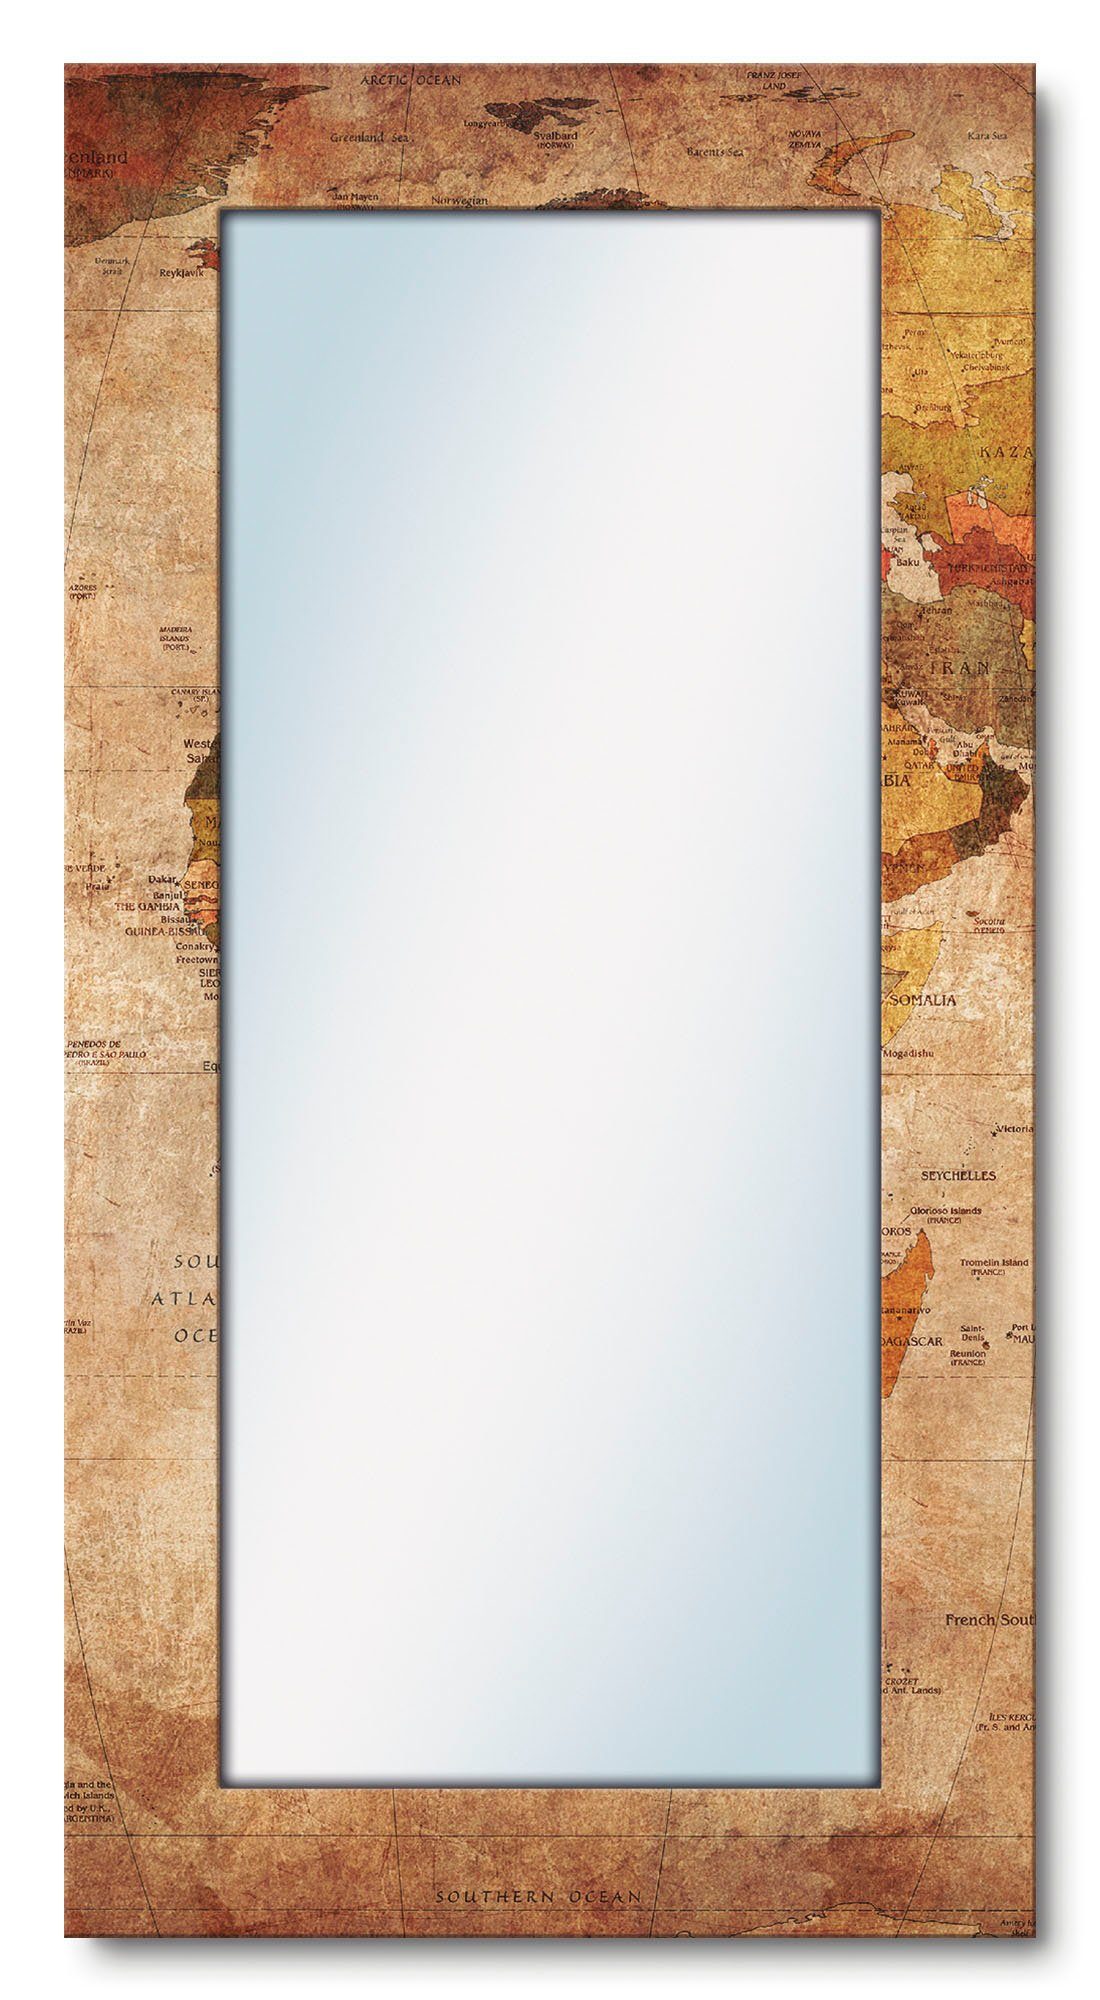 Artland Sierspiegel Wereldkaart ingelijste spiegel voor het hele lichaam met motiefrand, geschikt voor kleine, smalle hal, halspiegel, mirror spiegel omrand om op te hangen